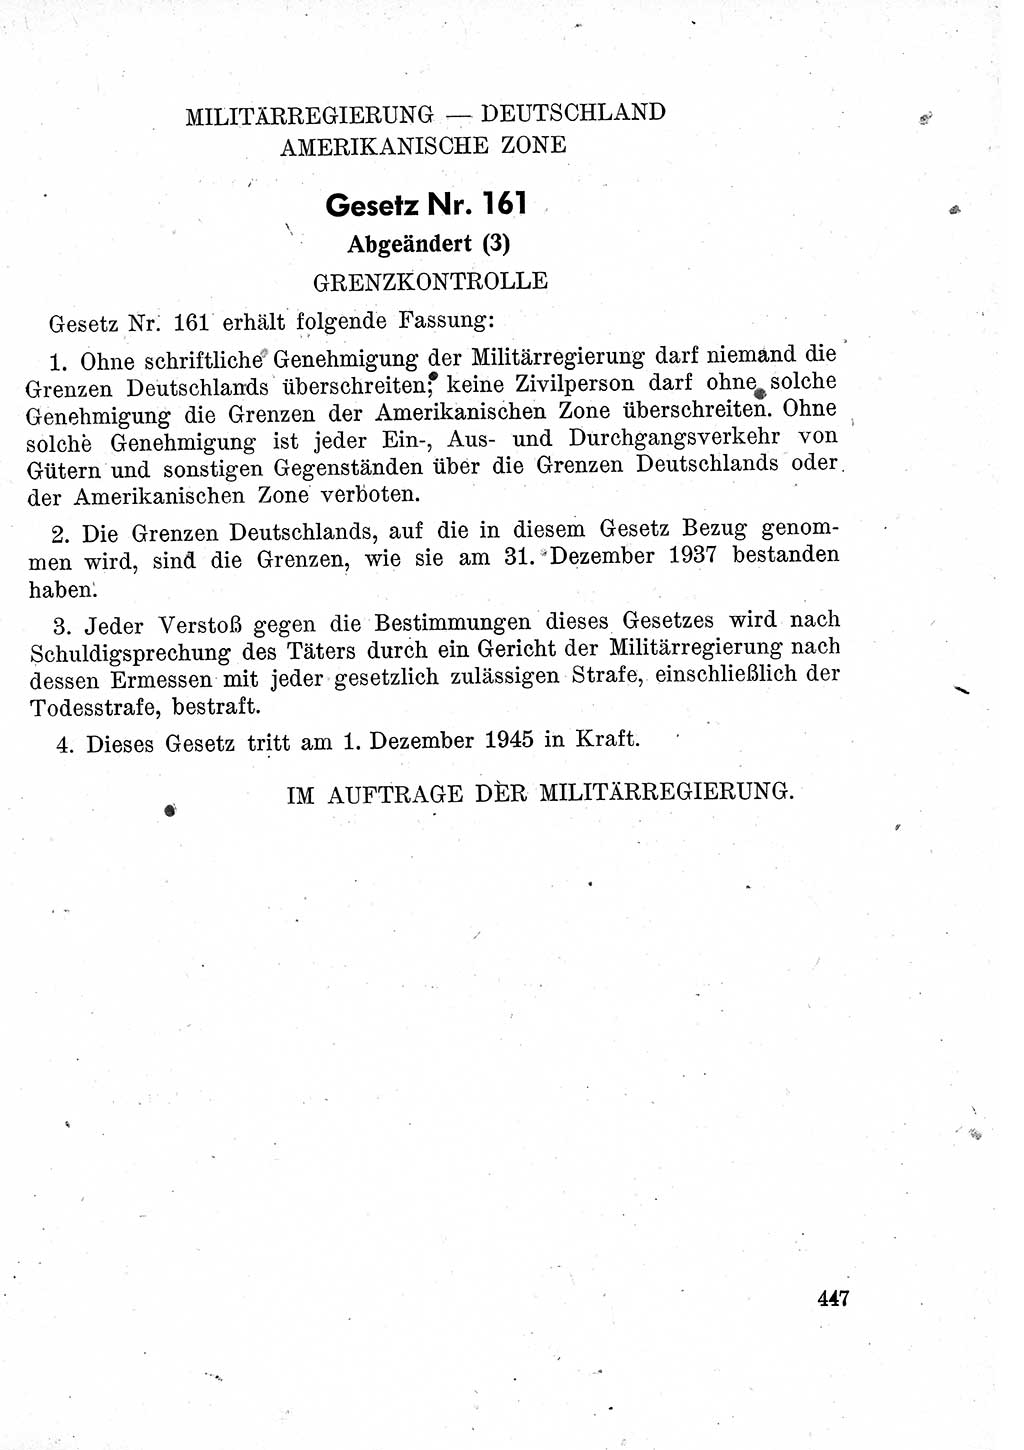 Das Recht der Besatzungsmacht (Deutschland), Proklamationen, Deklerationen, Verordnungen, Gesetze und Bekanntmachungen 1947, Seite 447 (R. Bes. Dtl. 1947, S. 447)